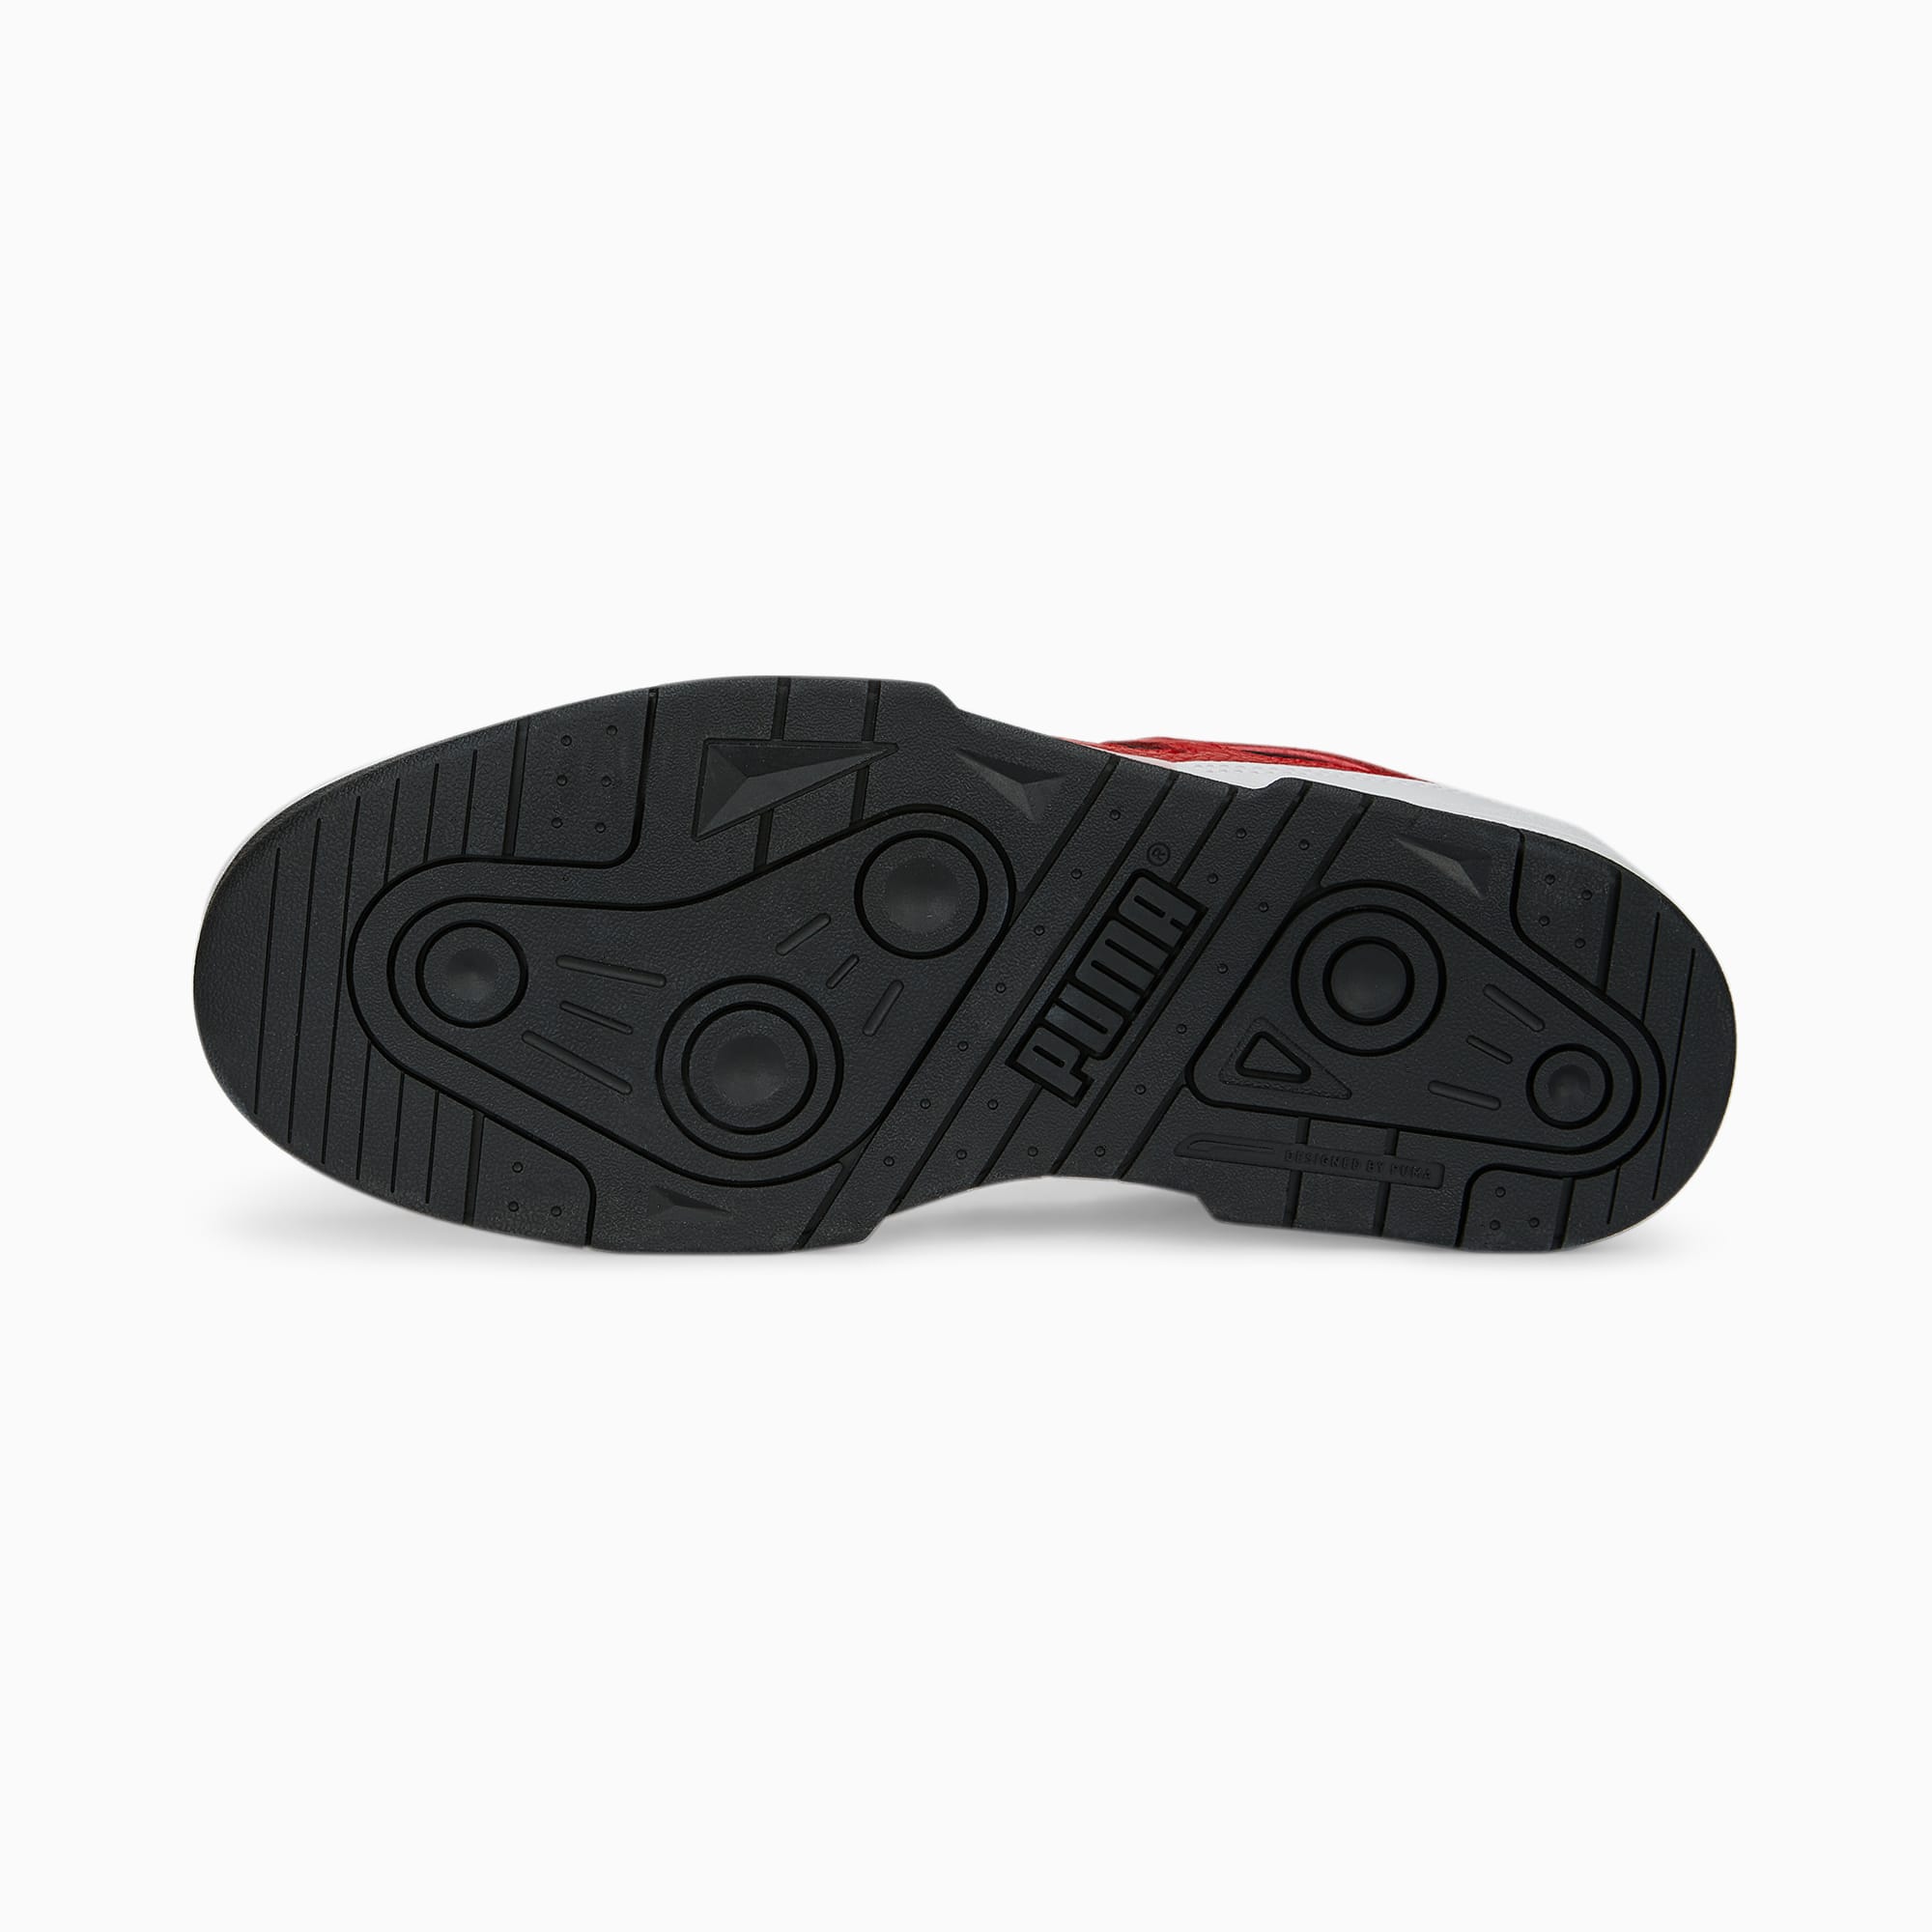 PUMA Zapatillas Slipstream Leather, Blanco/Negro/Rojo